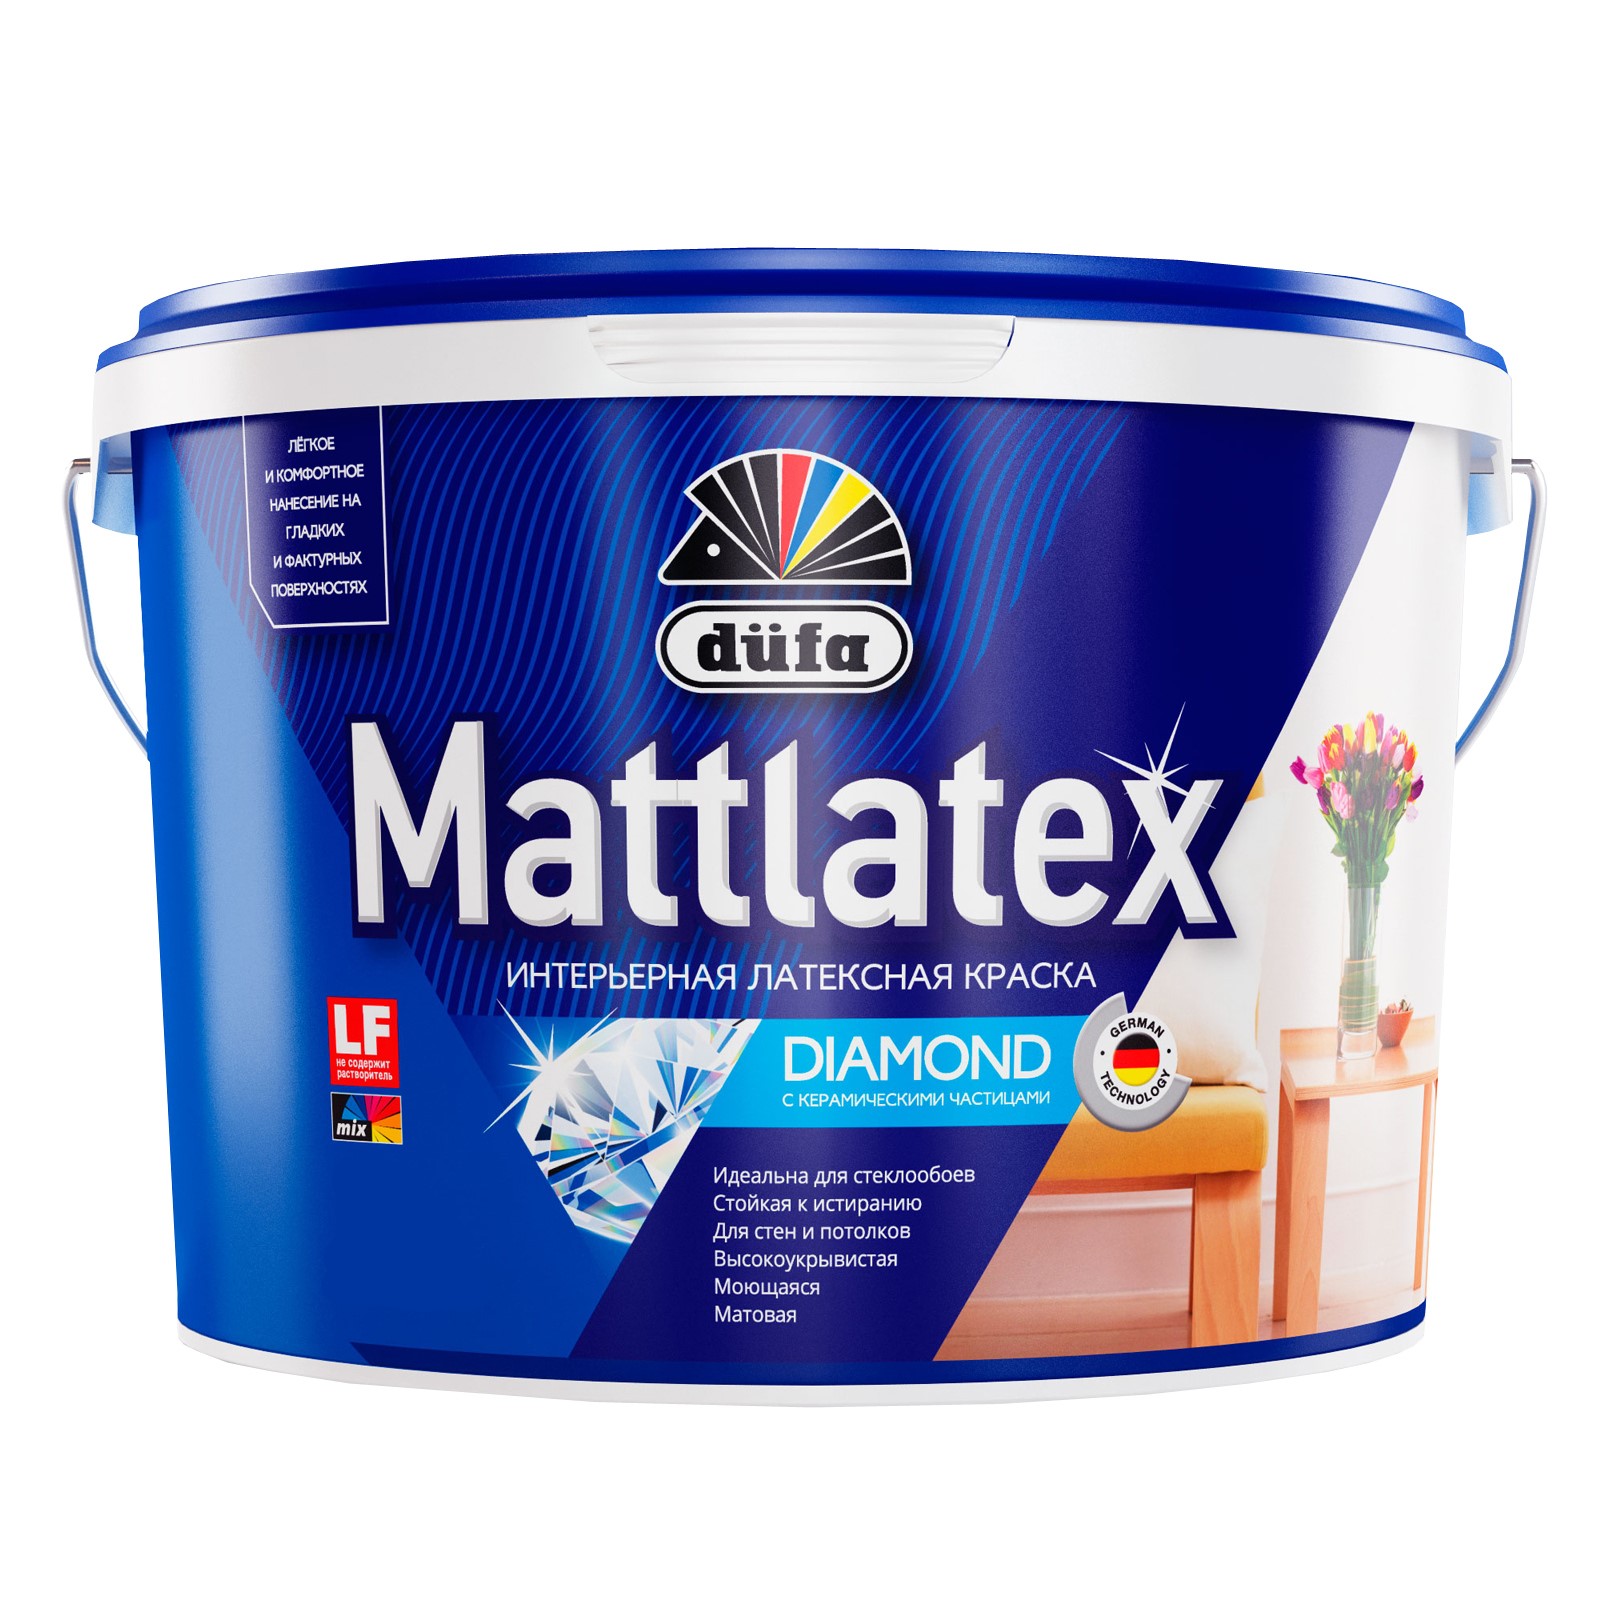 Краска Dufa Mattlatex RD100 водно-дисперсионная, база 3, 900 мл